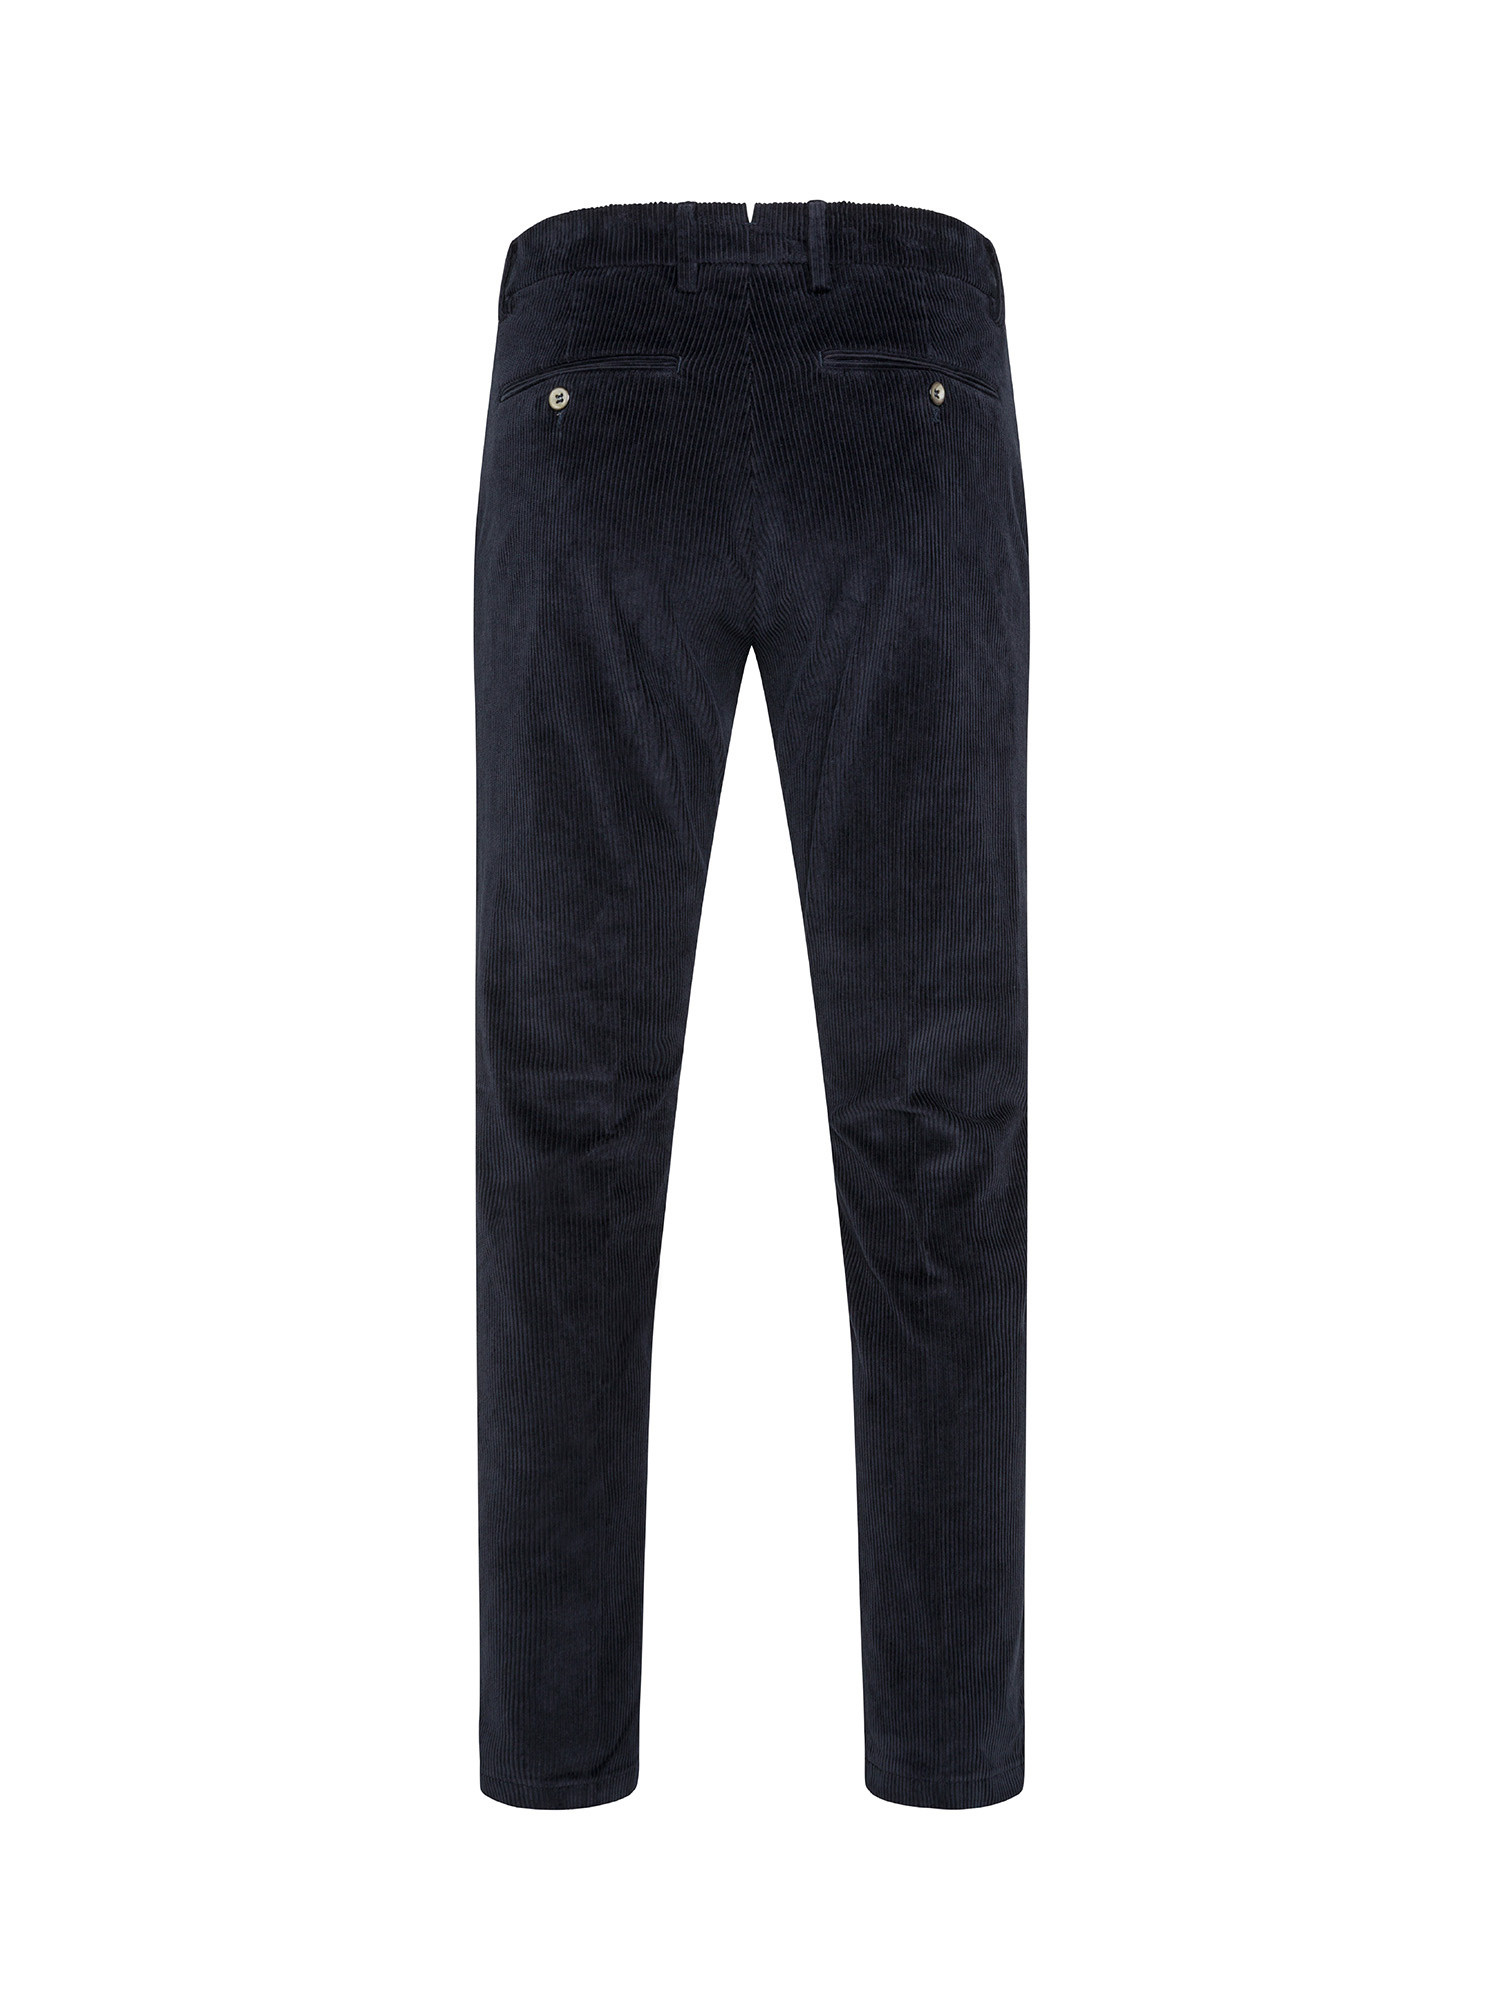 Pantaloni chino, Blu, large image number 1